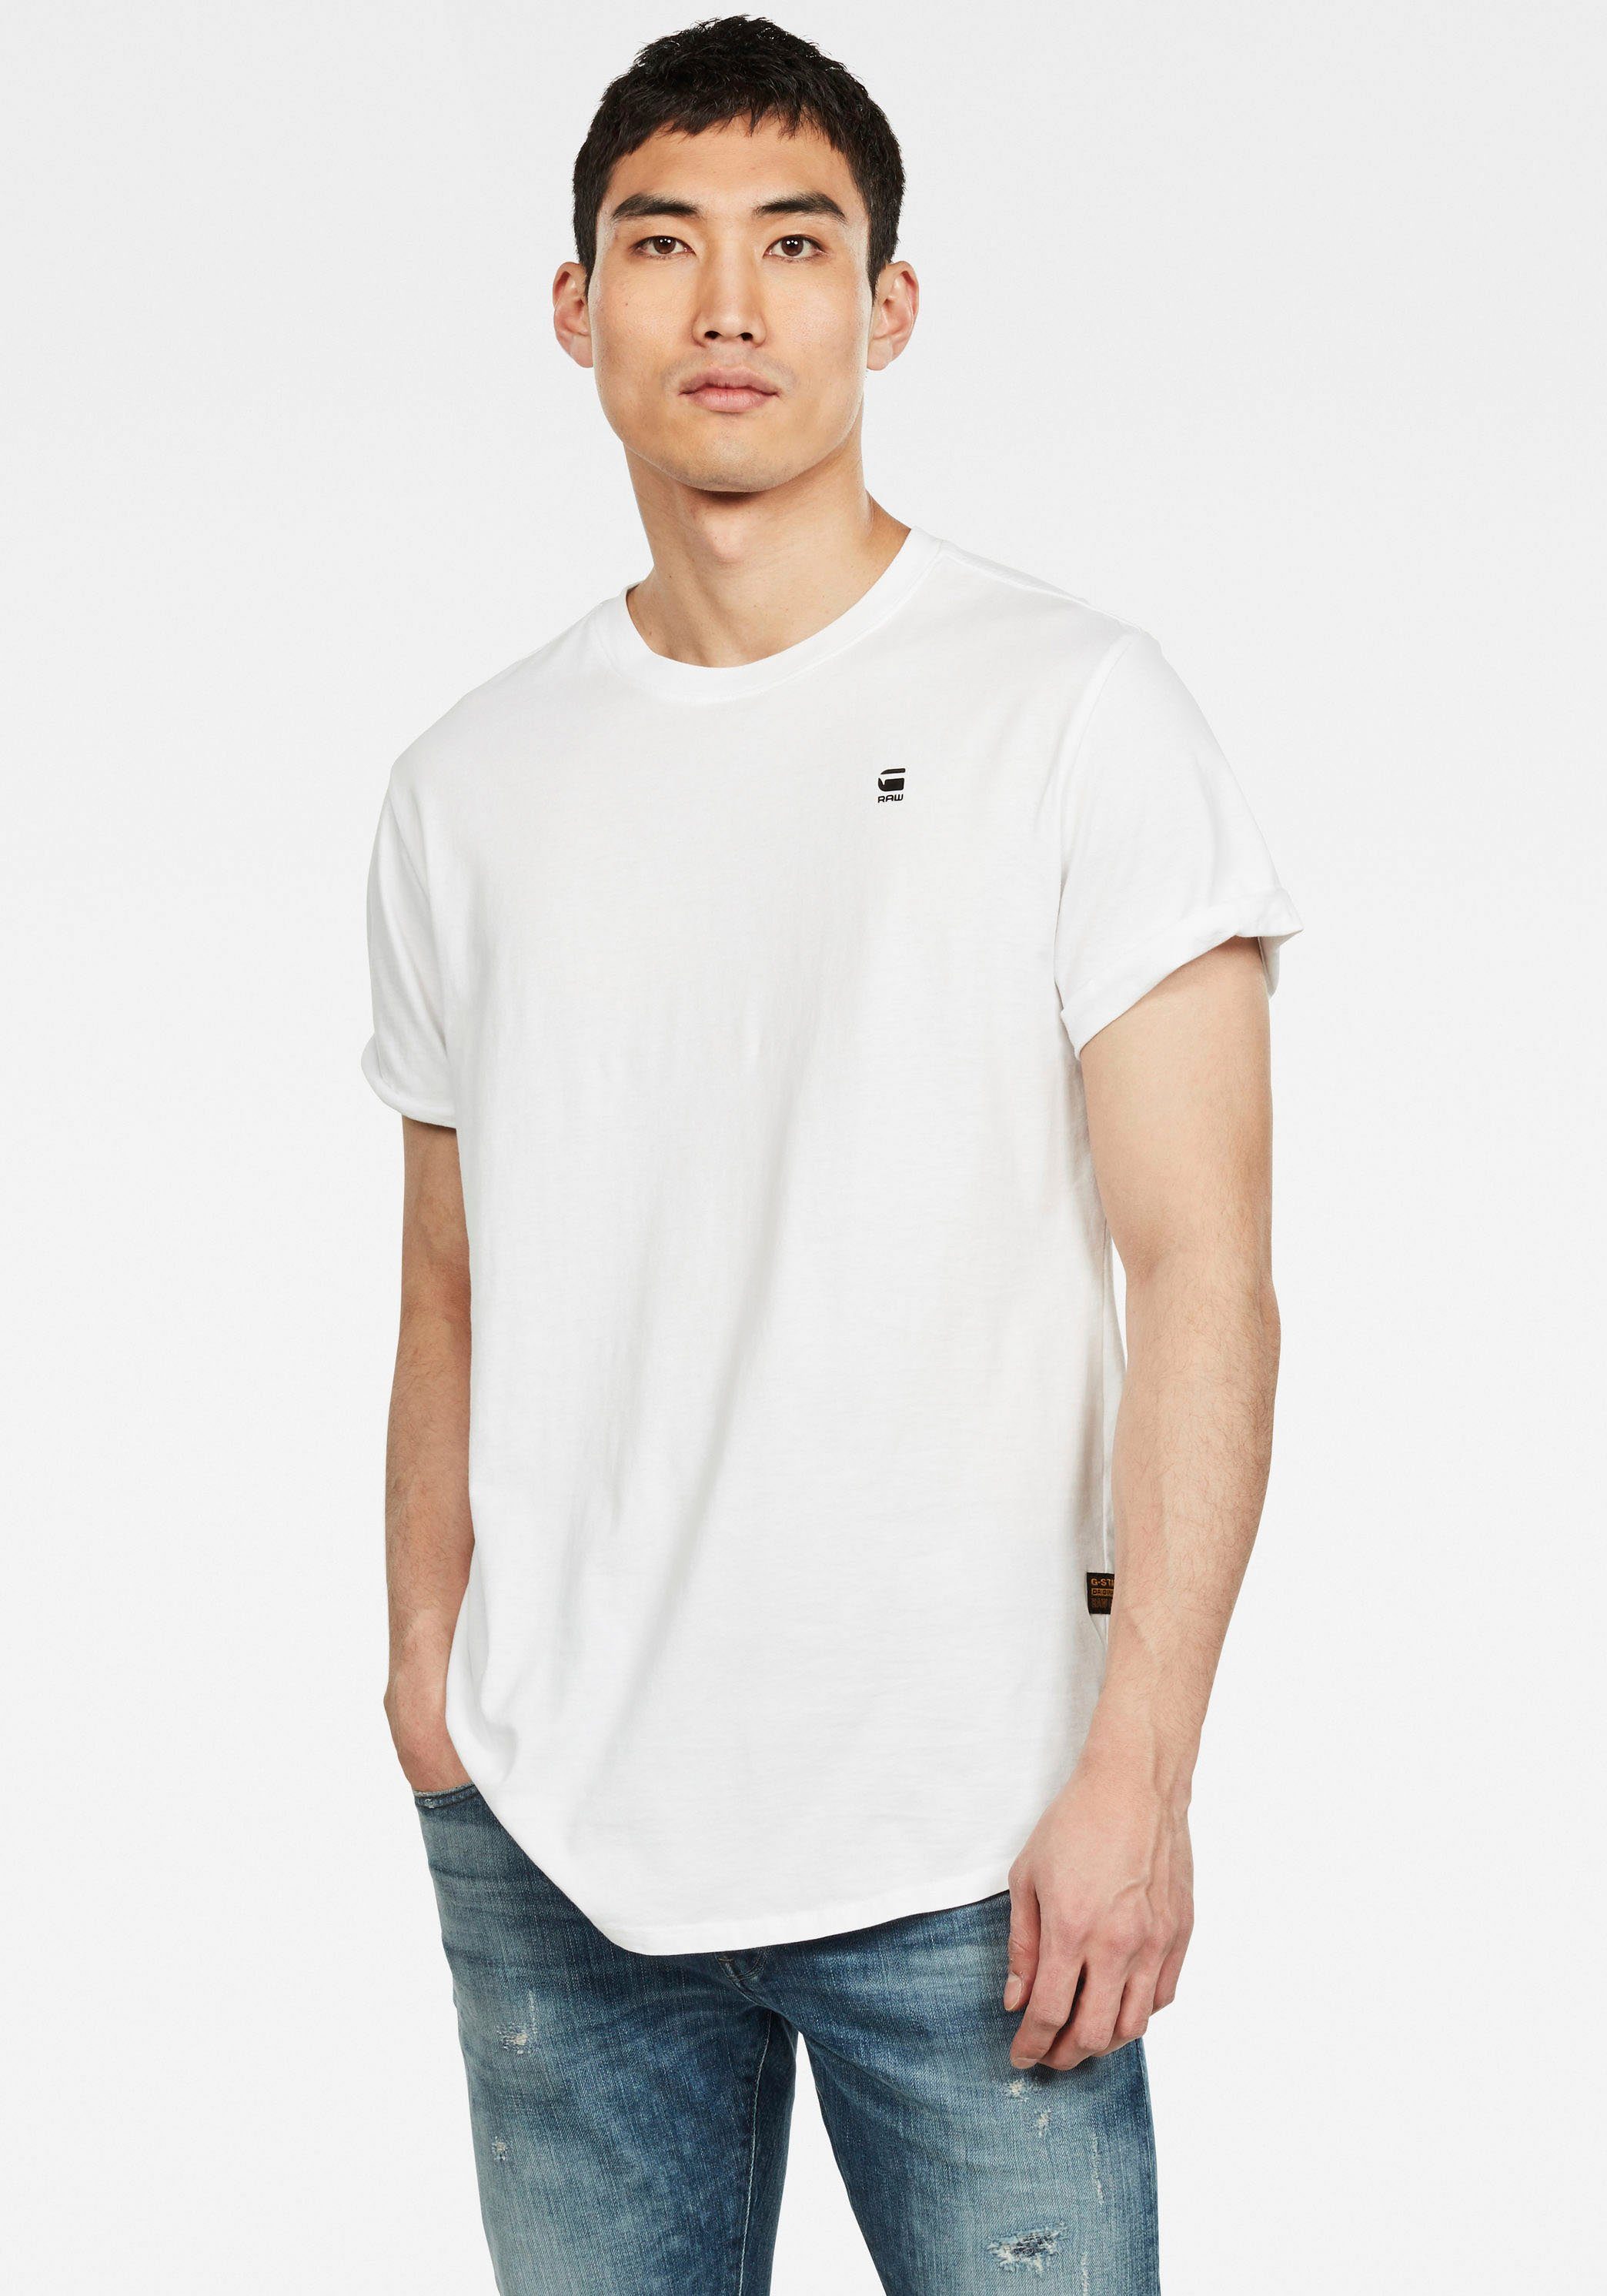 G-Star RAW T-Shirt Lash mit kleinem Logo Stitching white